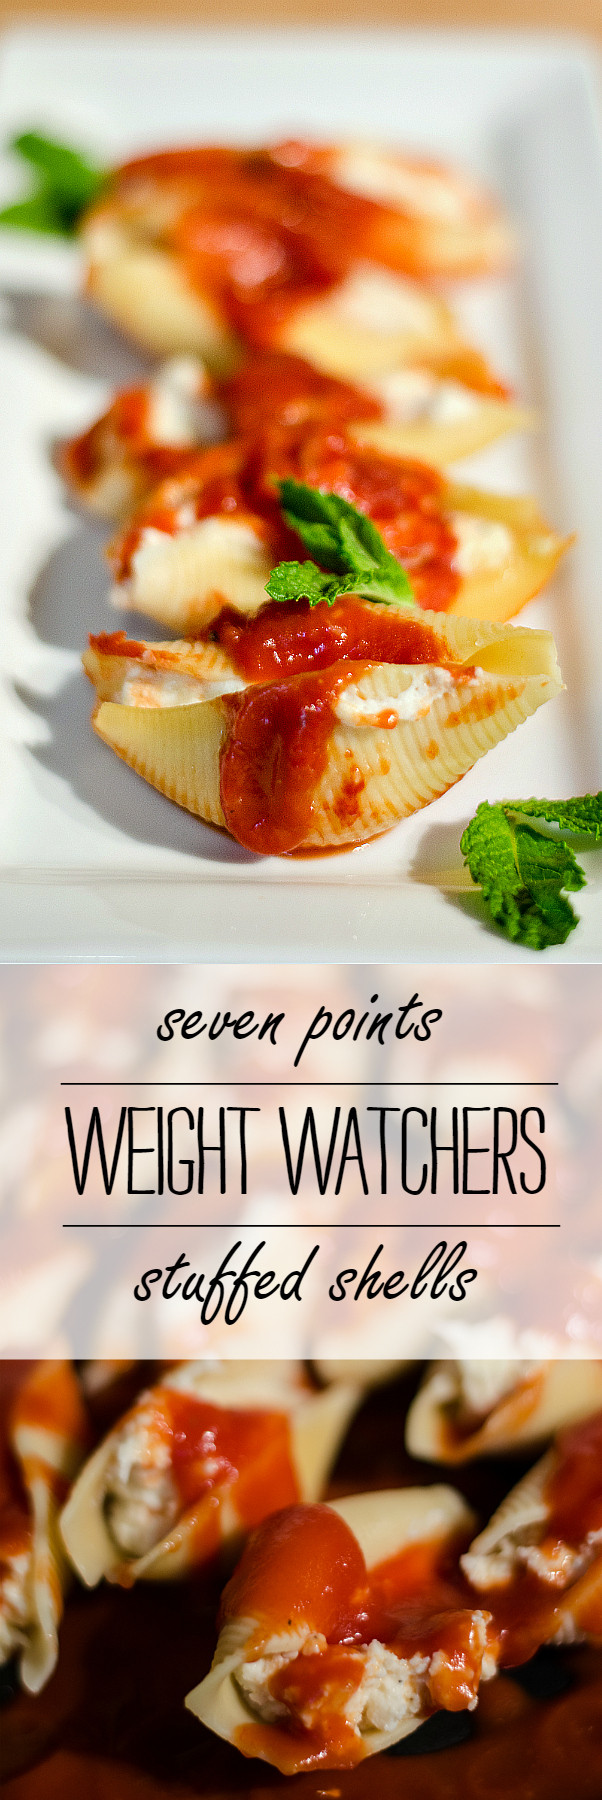 Weight Watchers Recipe Dinner
 Weight Watchers Stuffed Shells